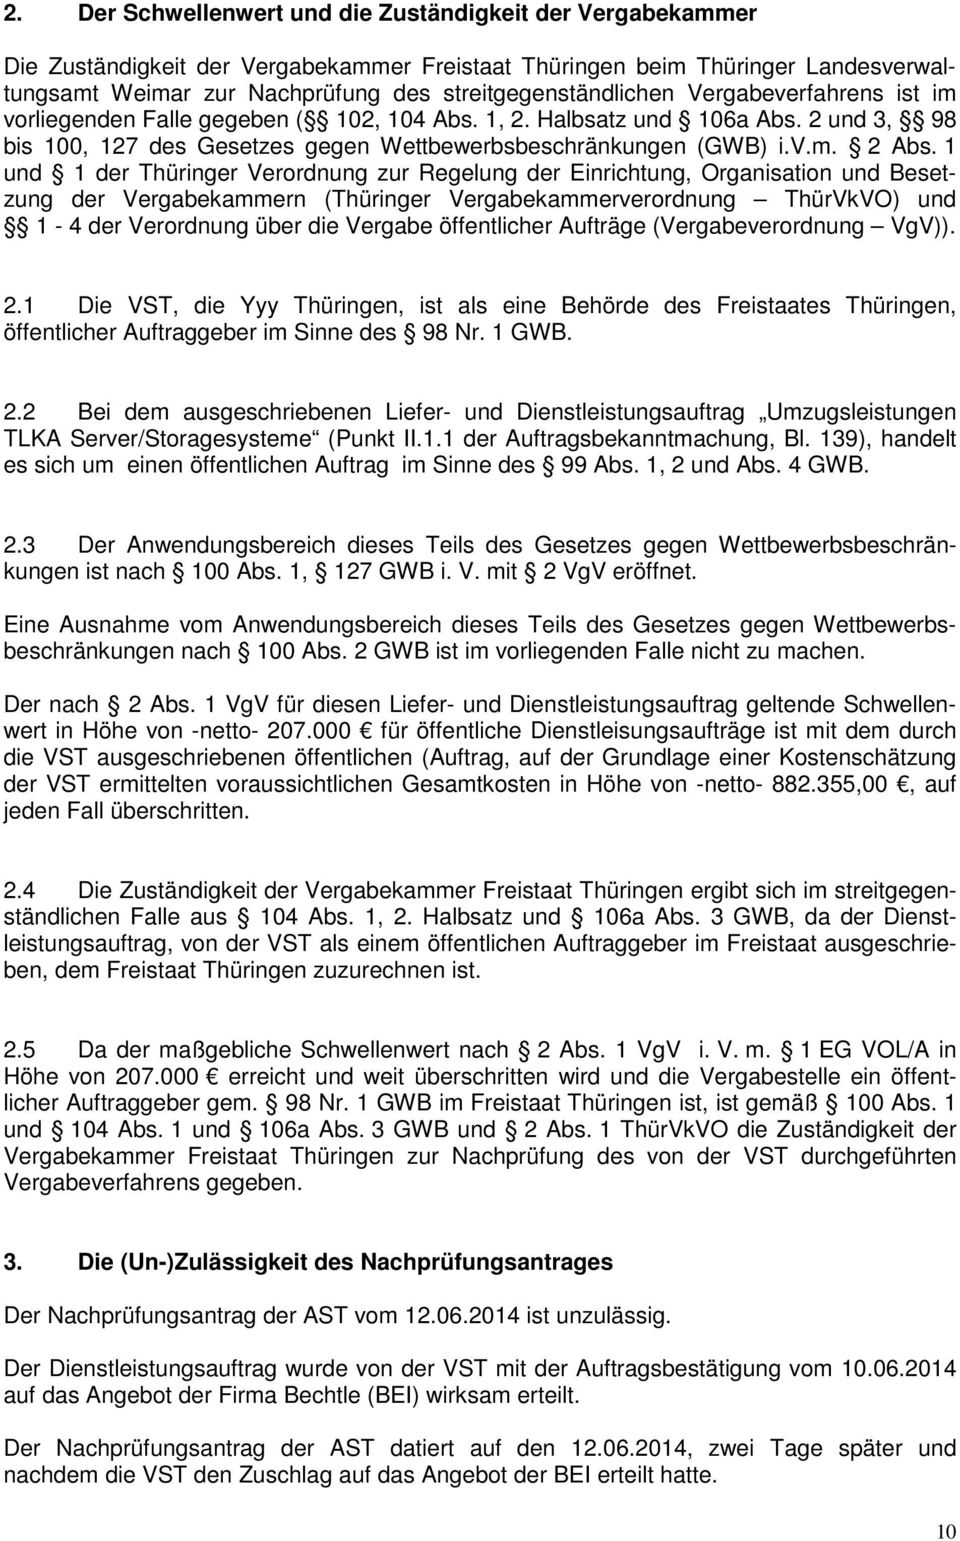 1 und 1 der Thüringer Verordnung zur Regelung der Einrichtung, Organisation und Besetzung der Vergabekammern (Thüringer Vergabekammerverordnung ThürVkVO) und 1-4 der Verordnung über die Vergabe